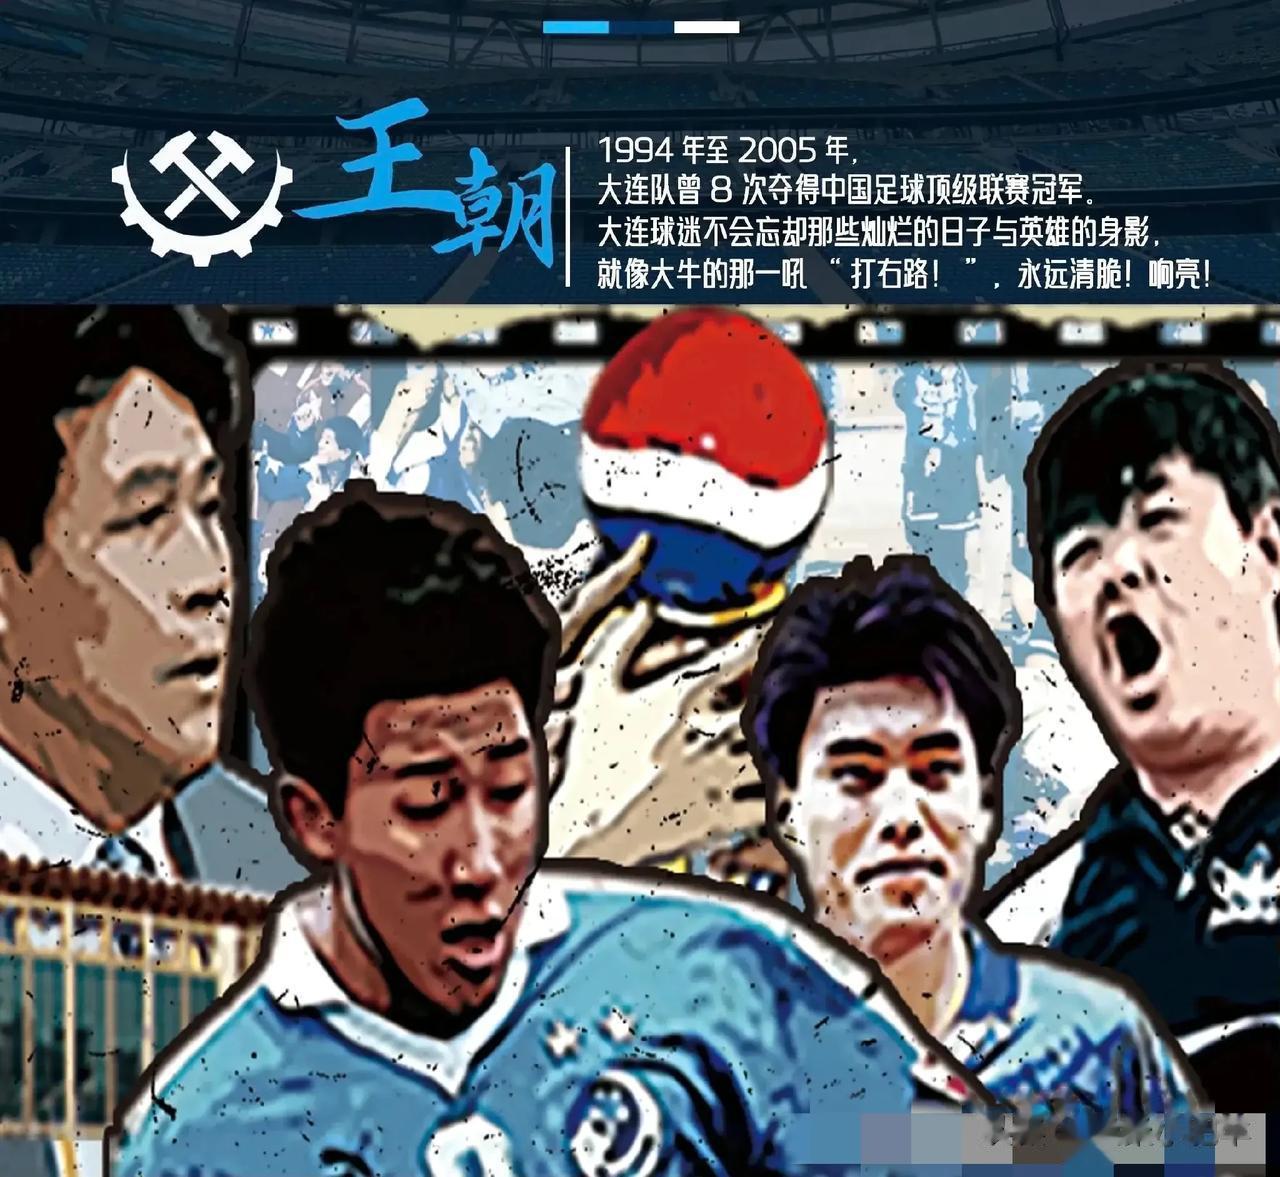 作为中国唯二的足球城，大连的足球底蕴不得不让人钦佩！哪怕是现在排名联赛倒数第一，(3)